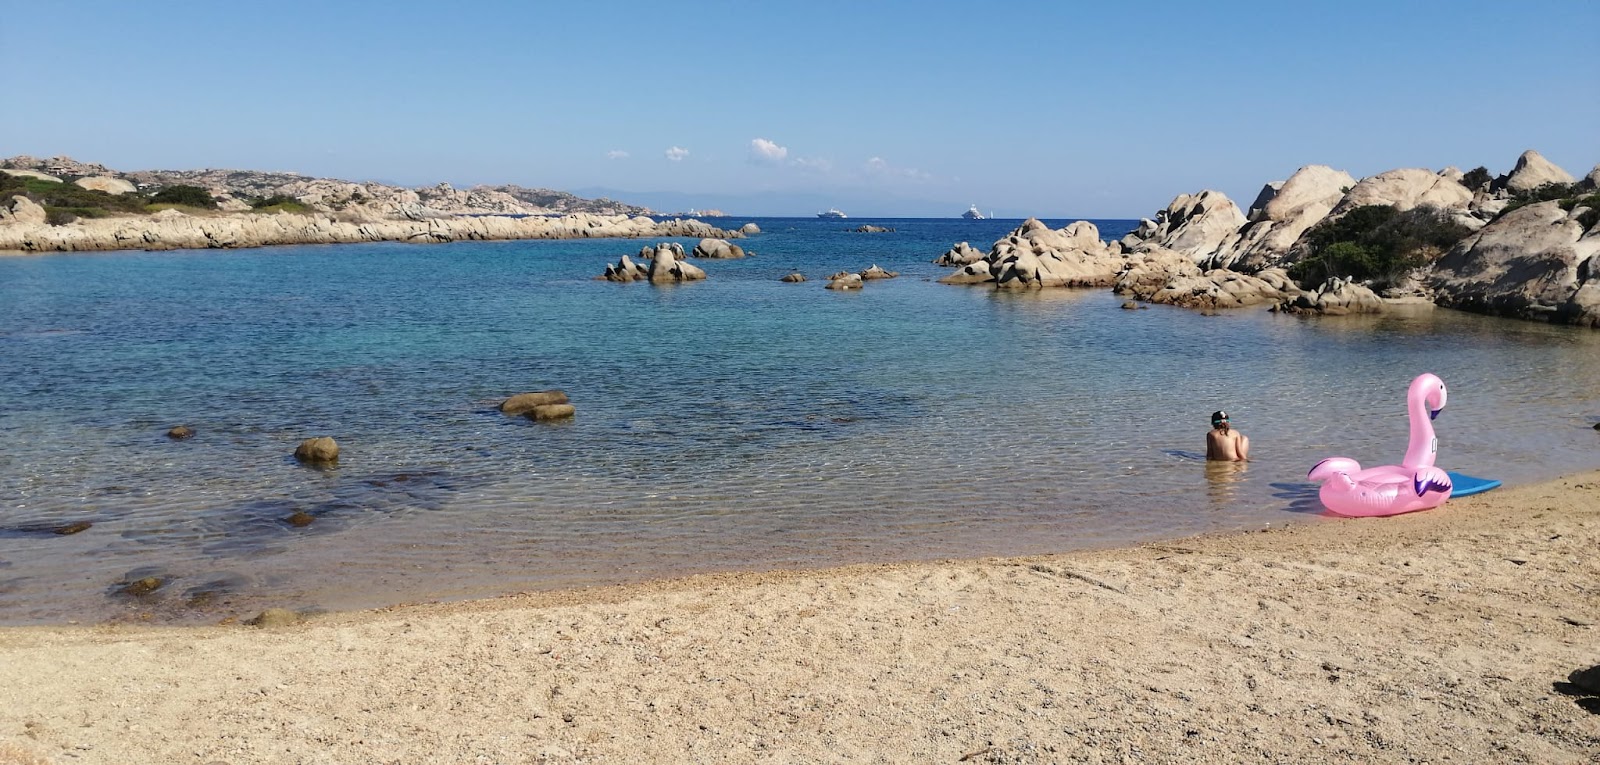 Foto de Spiaggia Testa Del Polpo com pequena baía